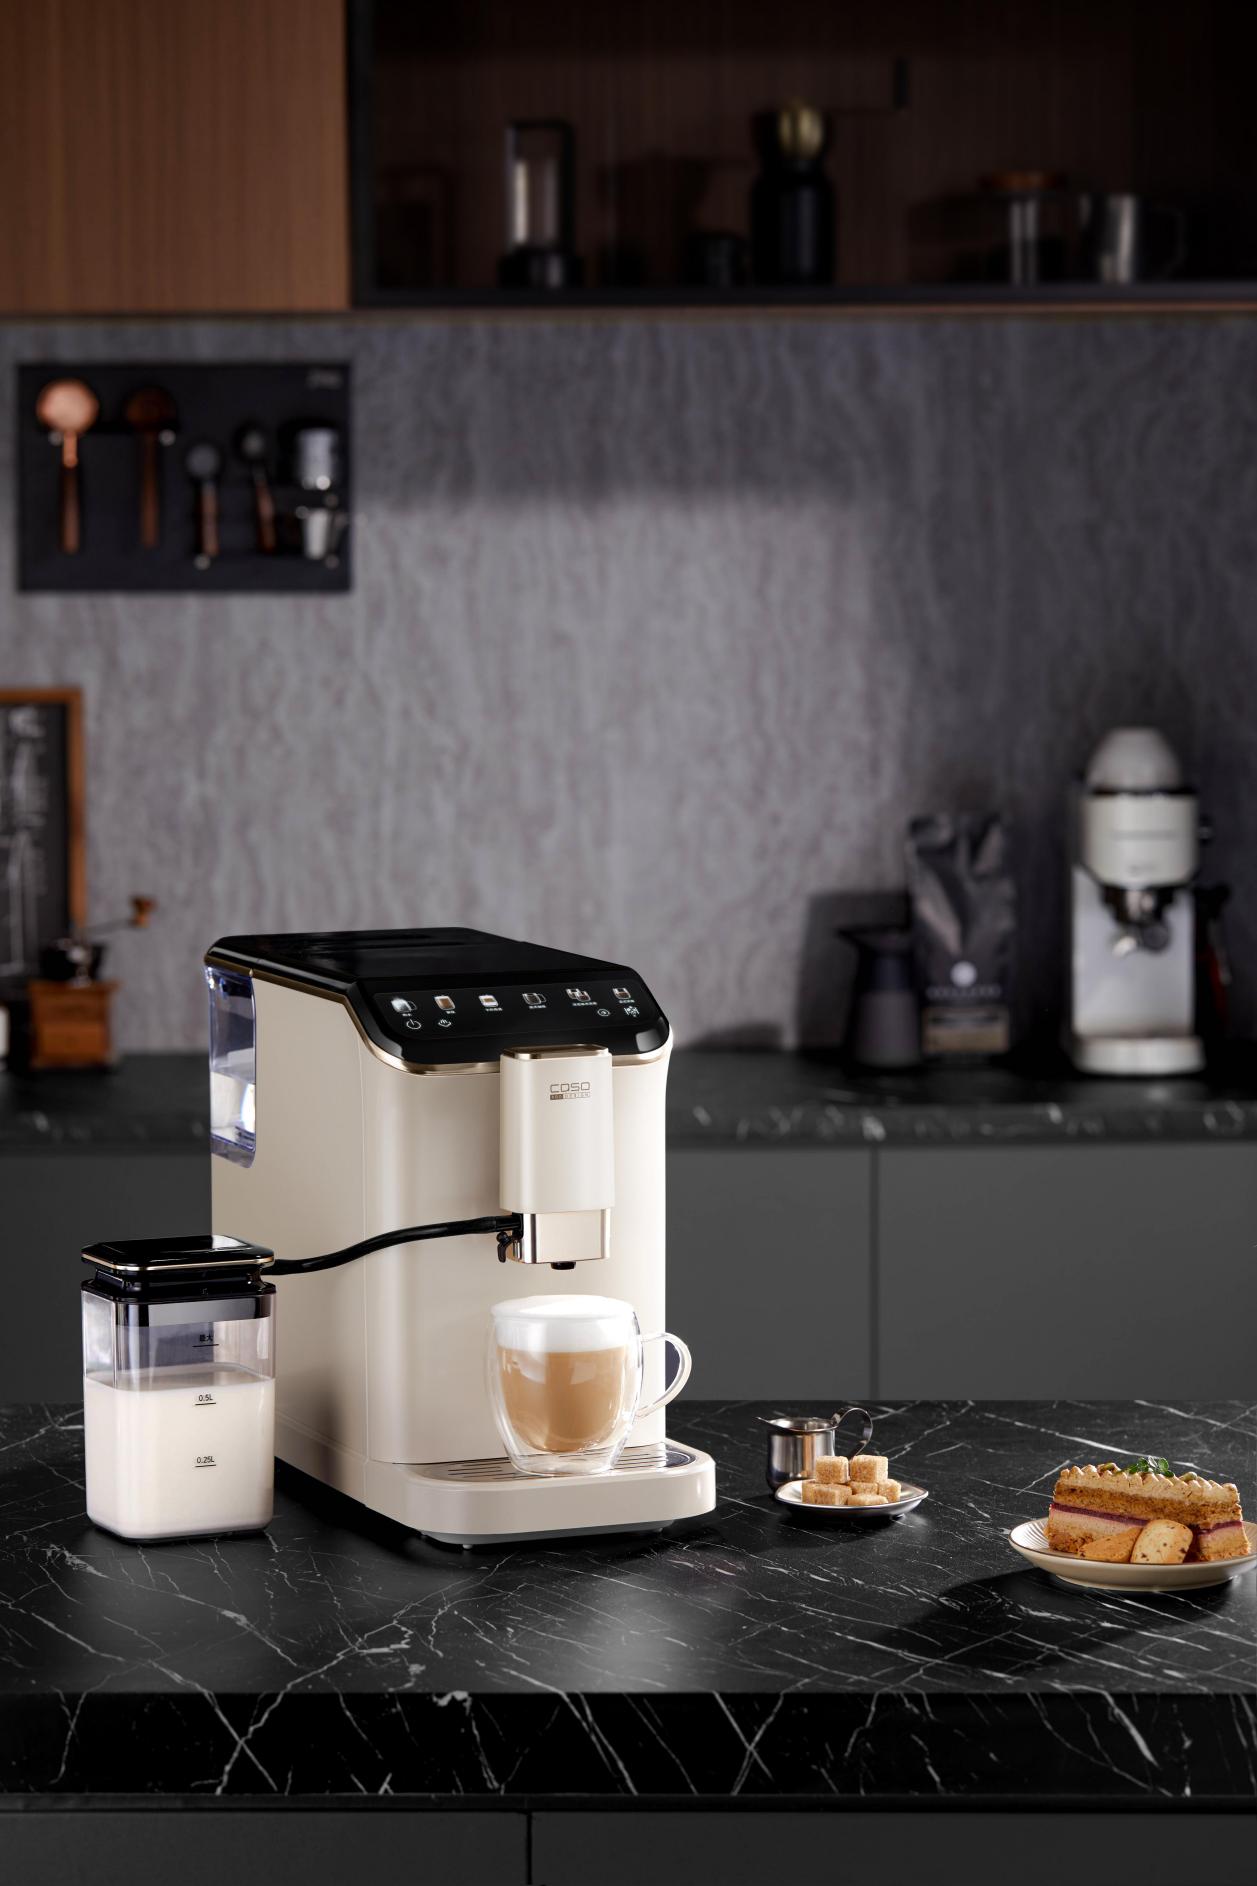 卡梭全自动咖啡机彩屏版：一键实现精品咖啡自由，轻松为工作生活减负